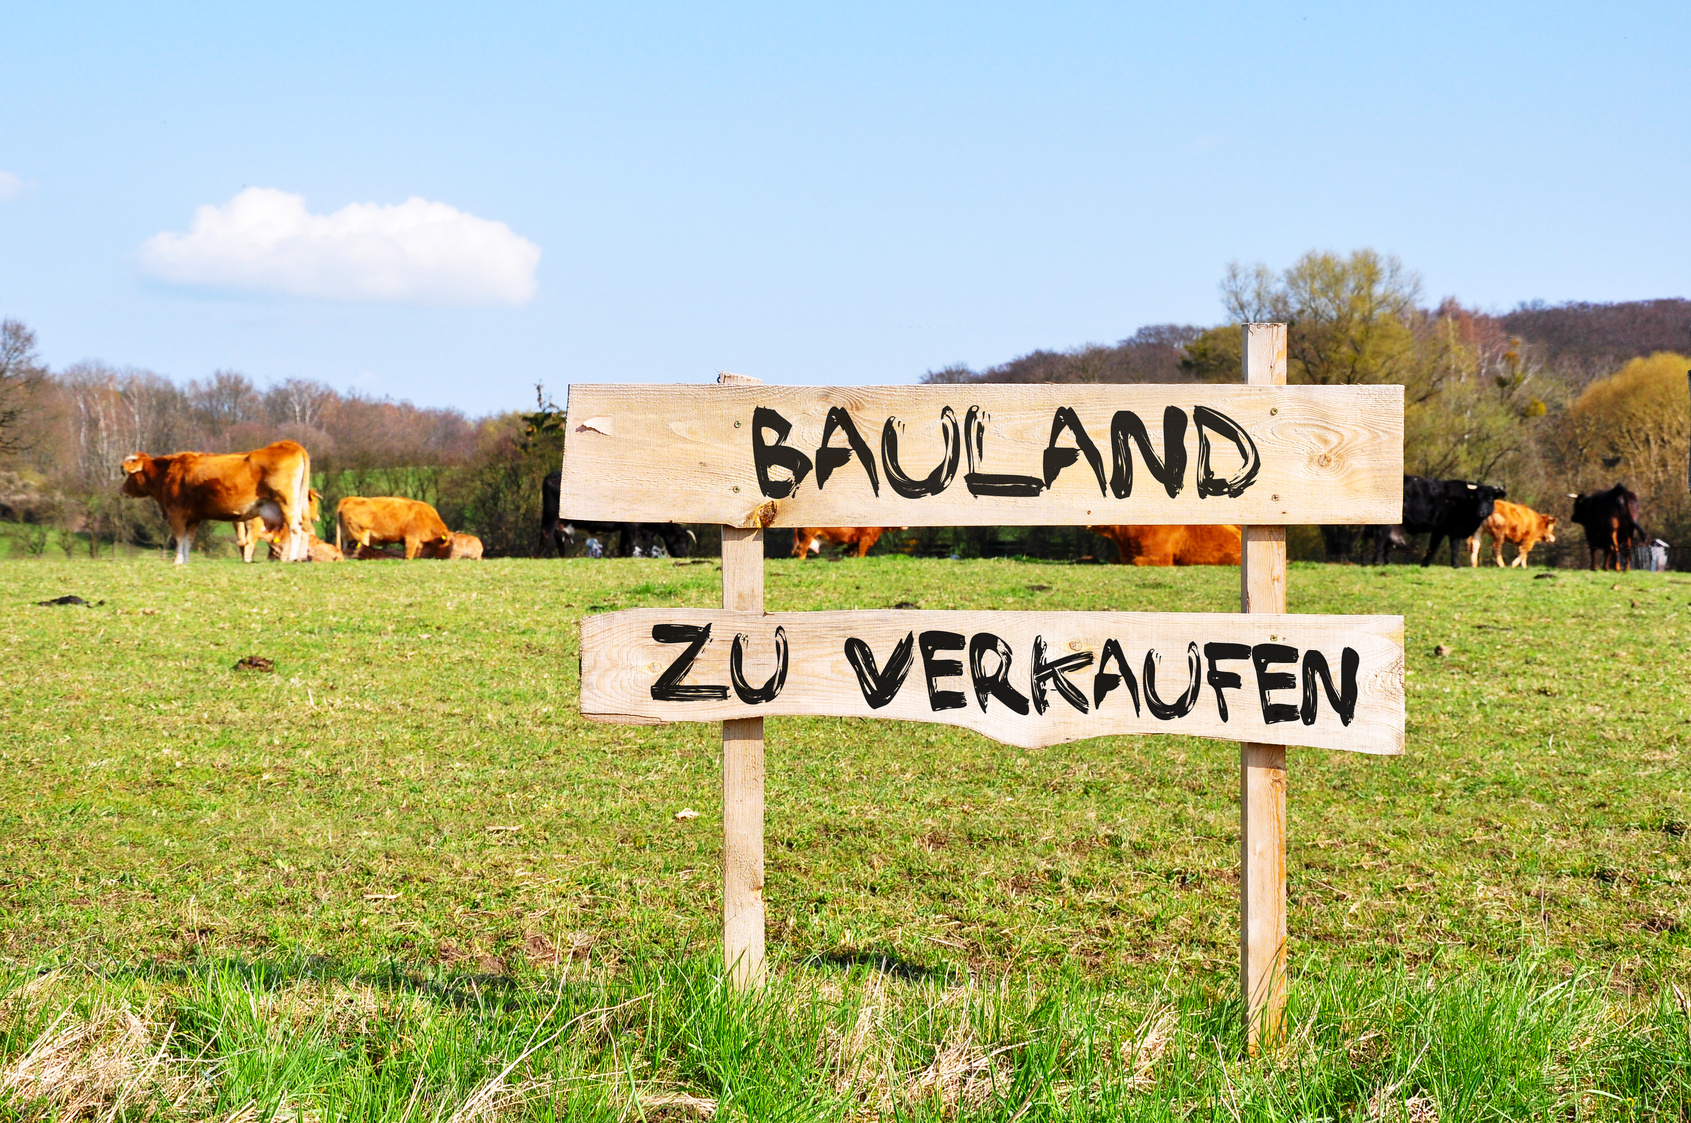 Gemeinde Göldenitz Veräußert Wohnbaugrundstück – Bewerbungen Bis 15.12. Möglich